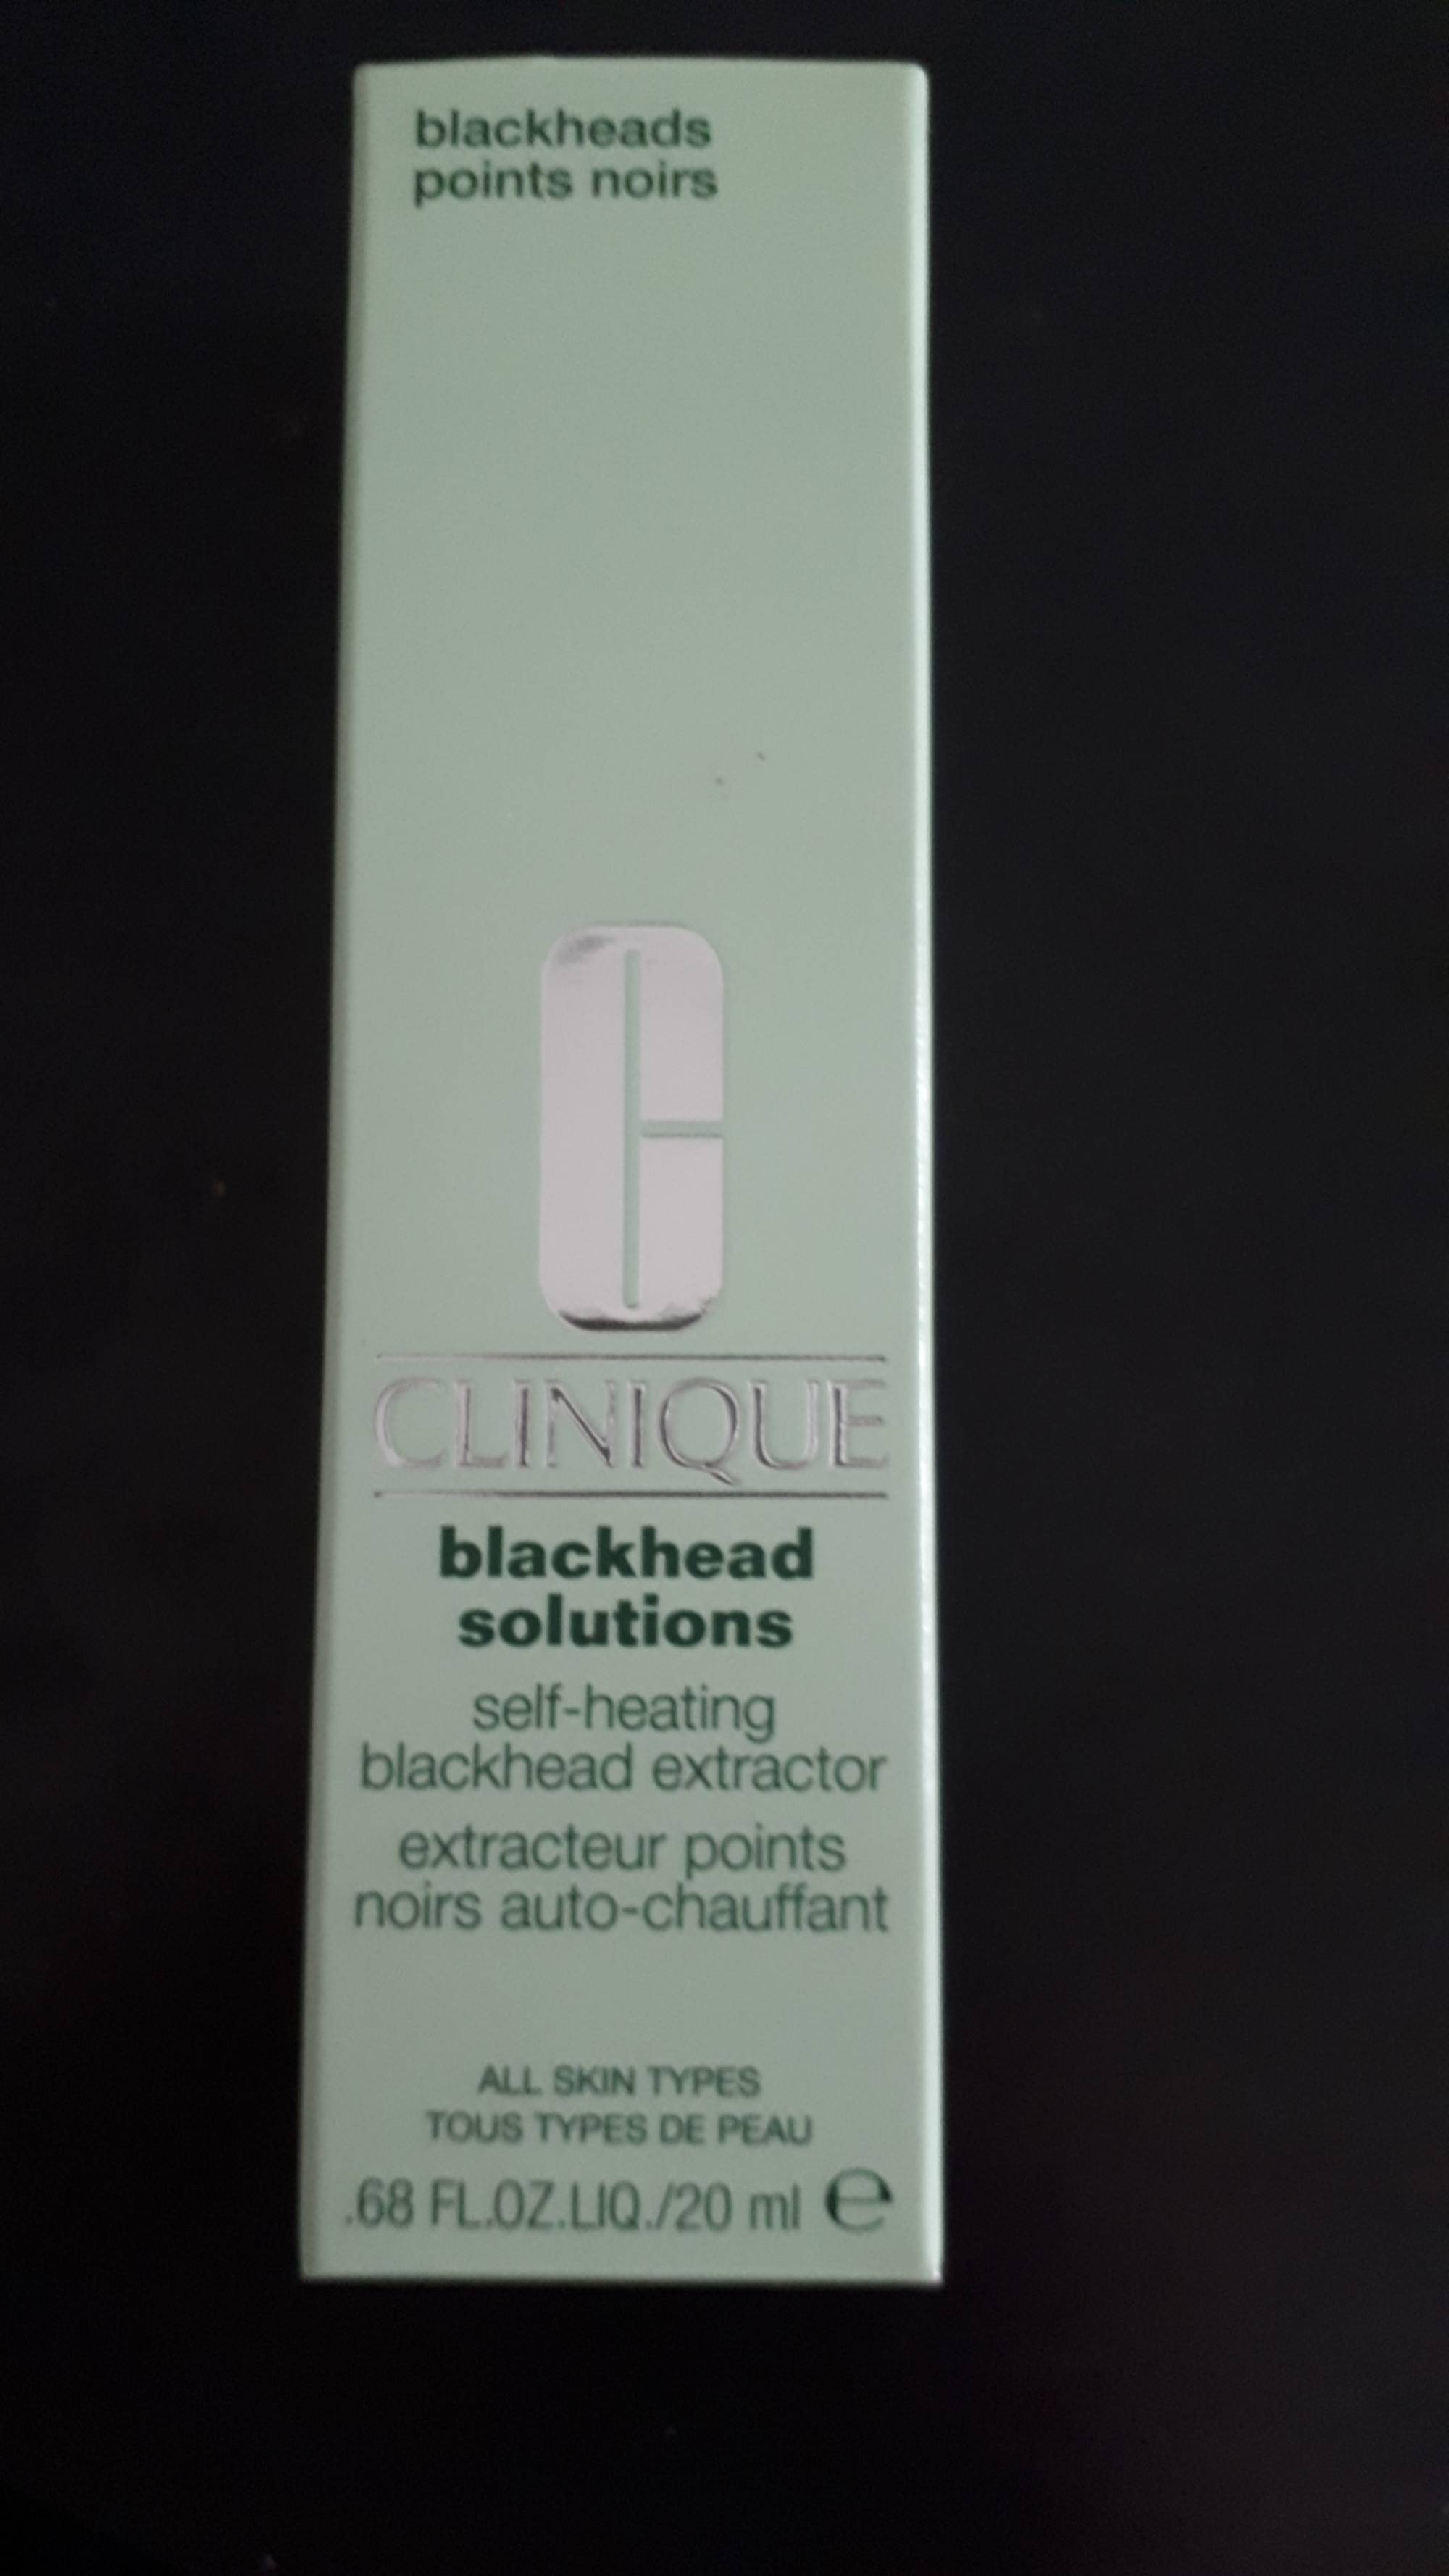 CLINIQUE - Blackhead solutions - Extracteur point noirs auto-chauffant